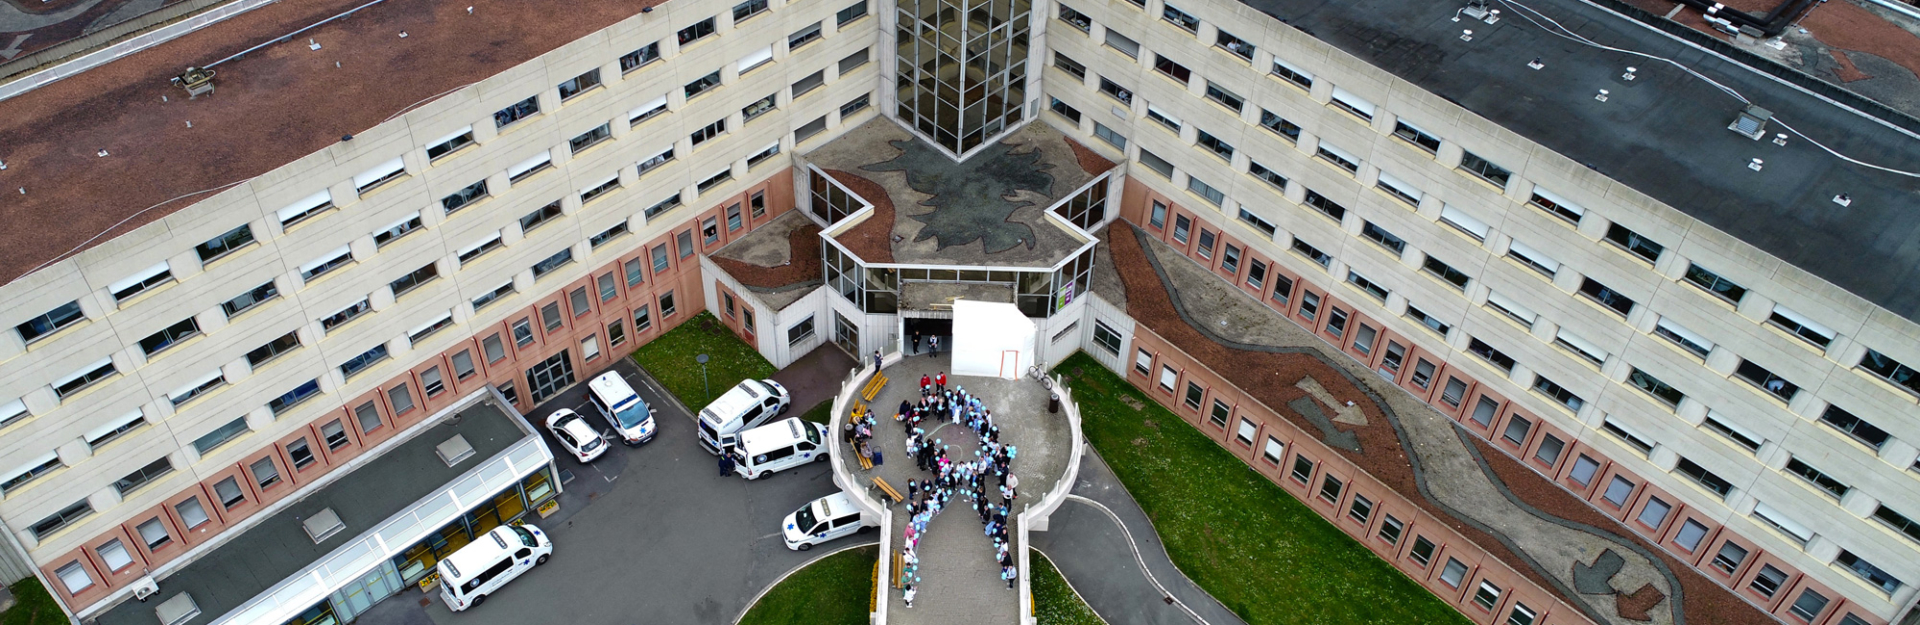 Vue aérienne de l'hôpital